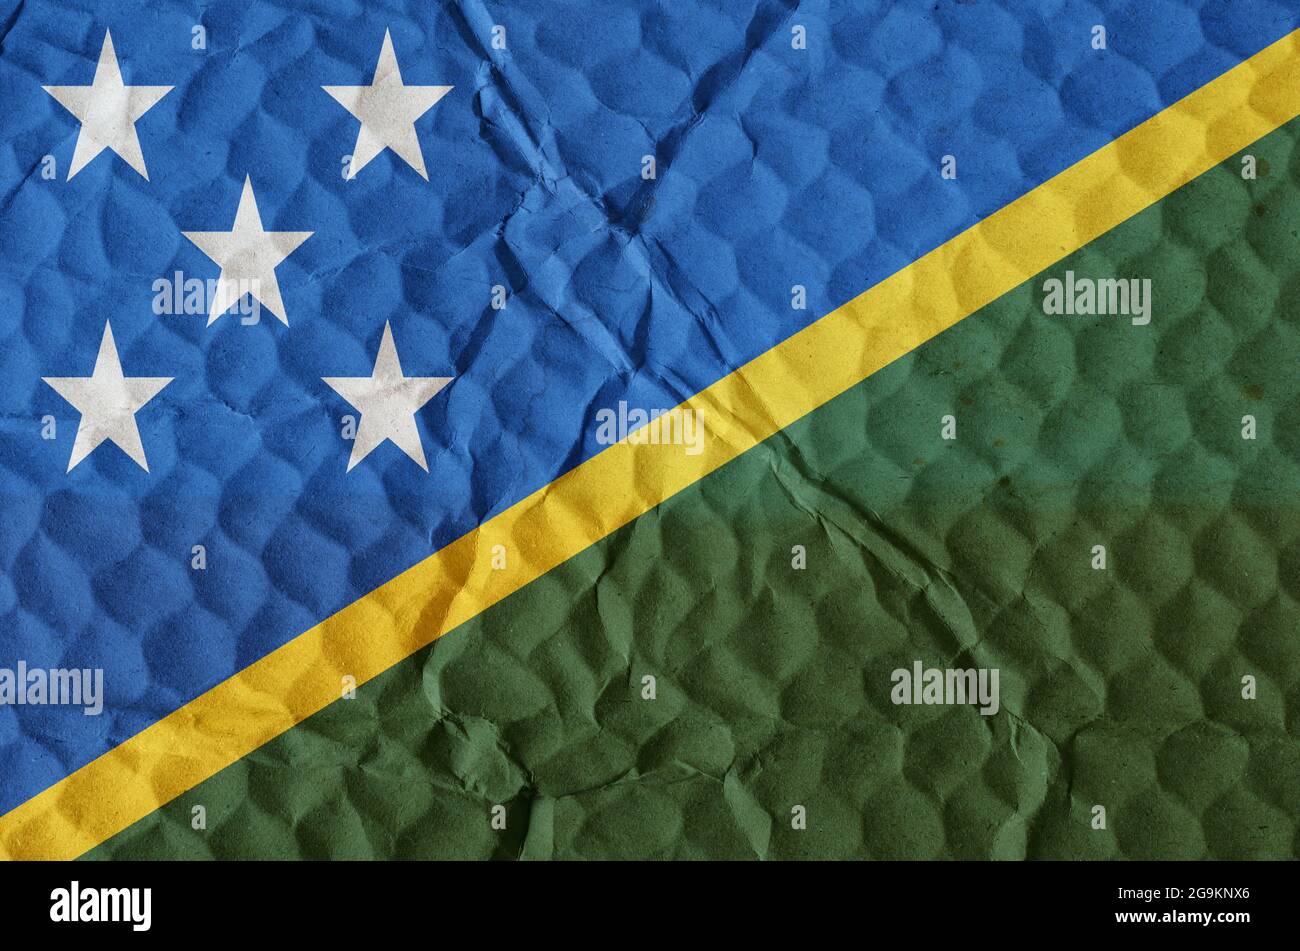 Grün-gelb-blaue Flagge mit weißen Sternen der Salomonen auf einer unebenen  strukturierten Oberfläche. Die Nationalflagge des Landes befindet sich auf  den Inseln i Stockfotografie - Alamy